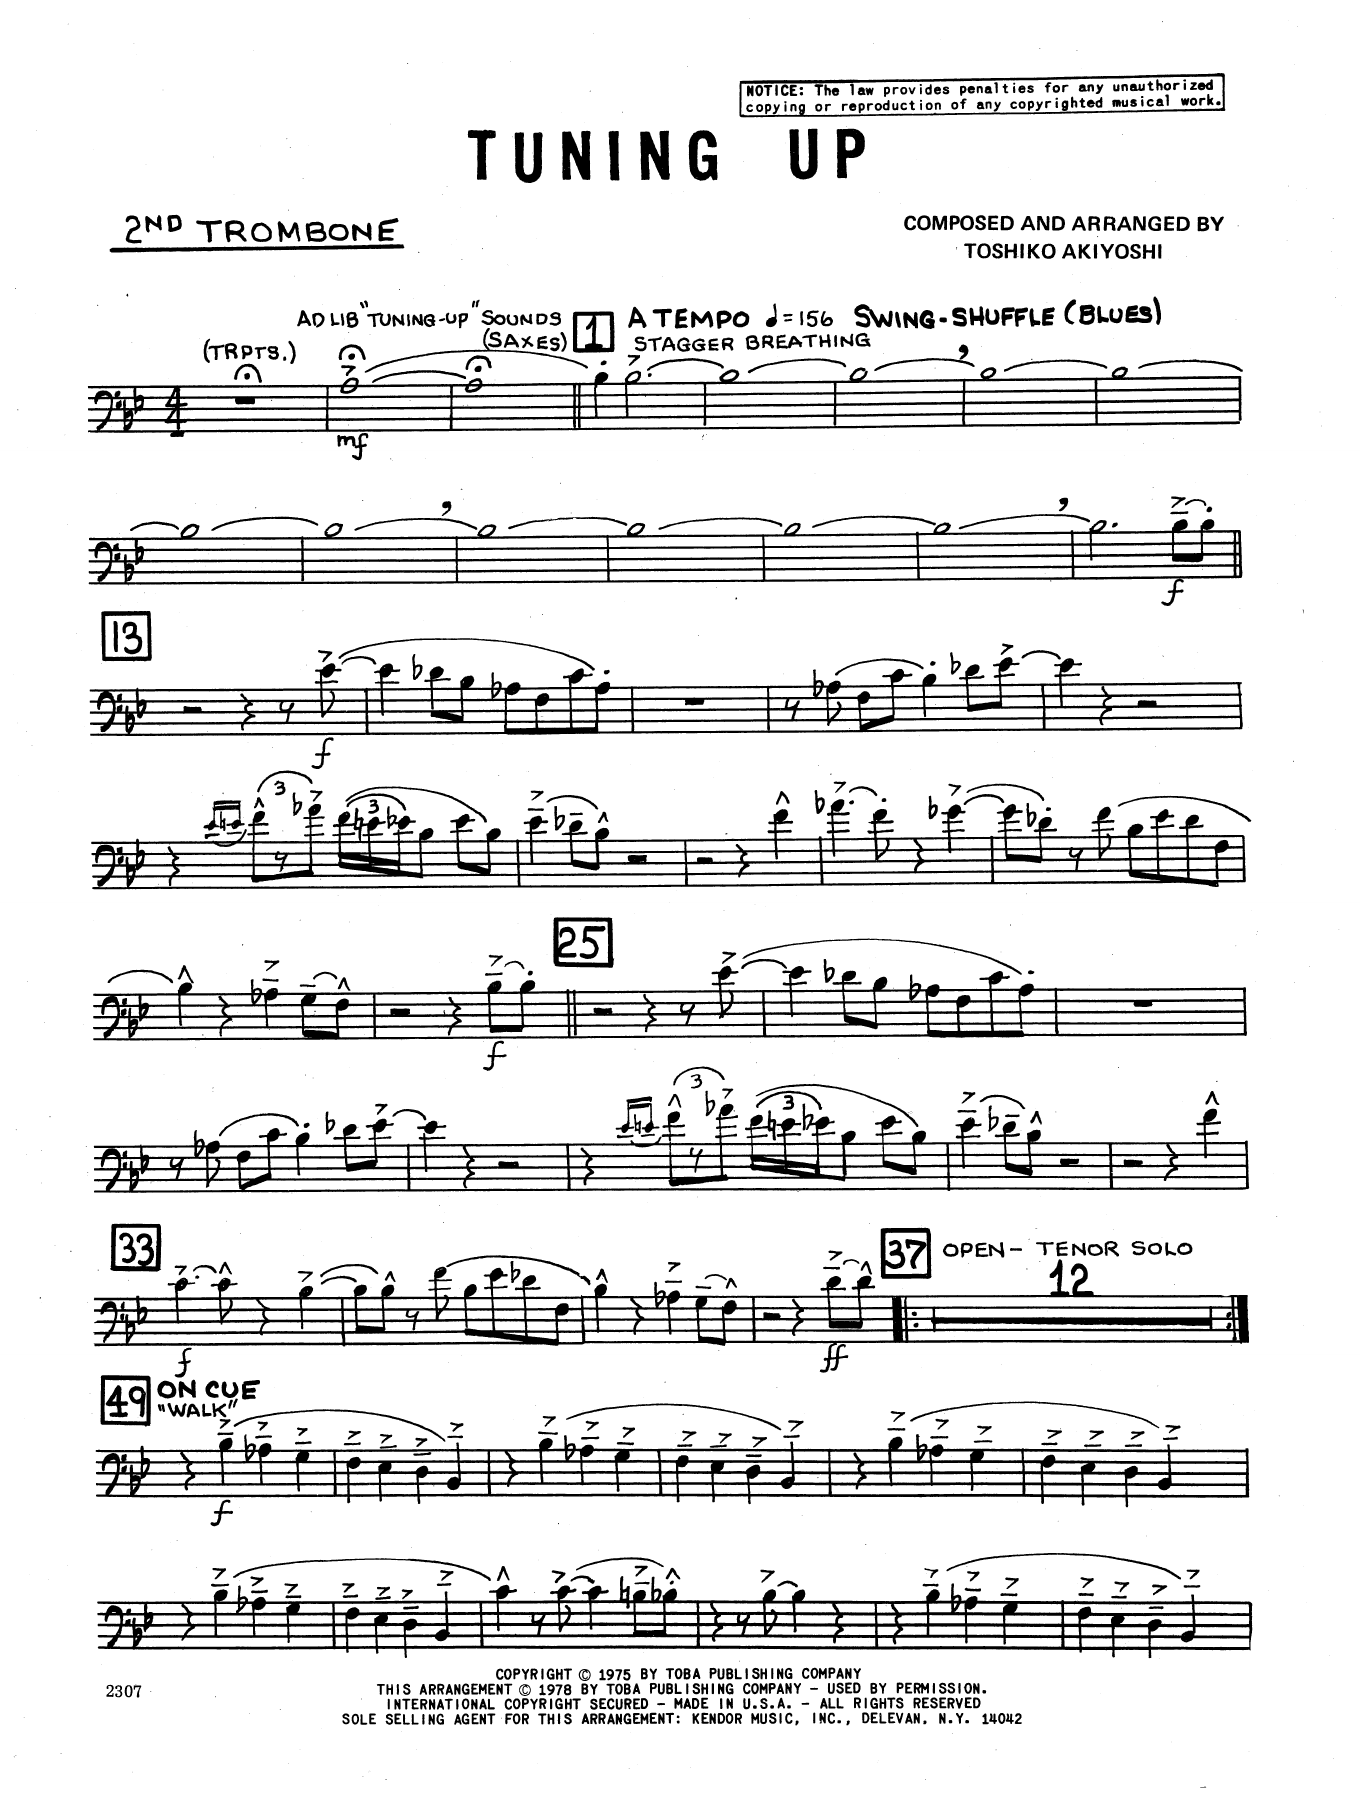 Download Toshiko Akiyoshi Tuning Up - 2nd Trombone Sheet Music